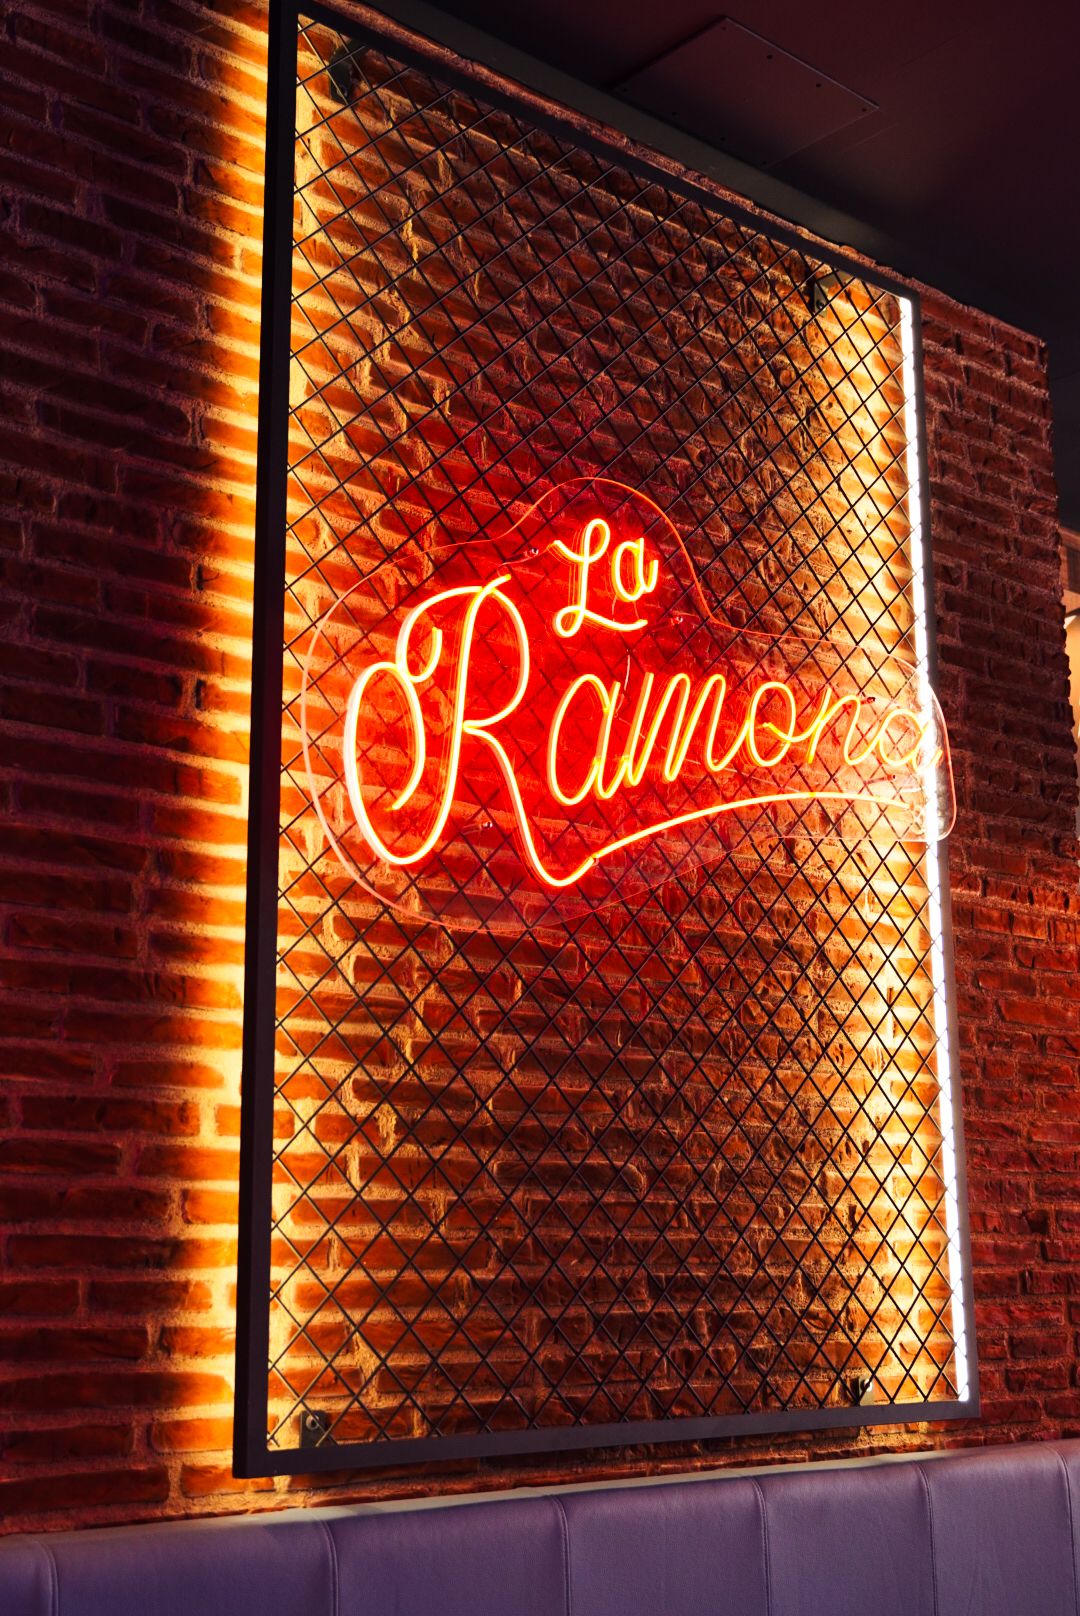 La franquicia La Ramona inaugura dos nuevos restaurantes en Valencia y Rivas Madrid